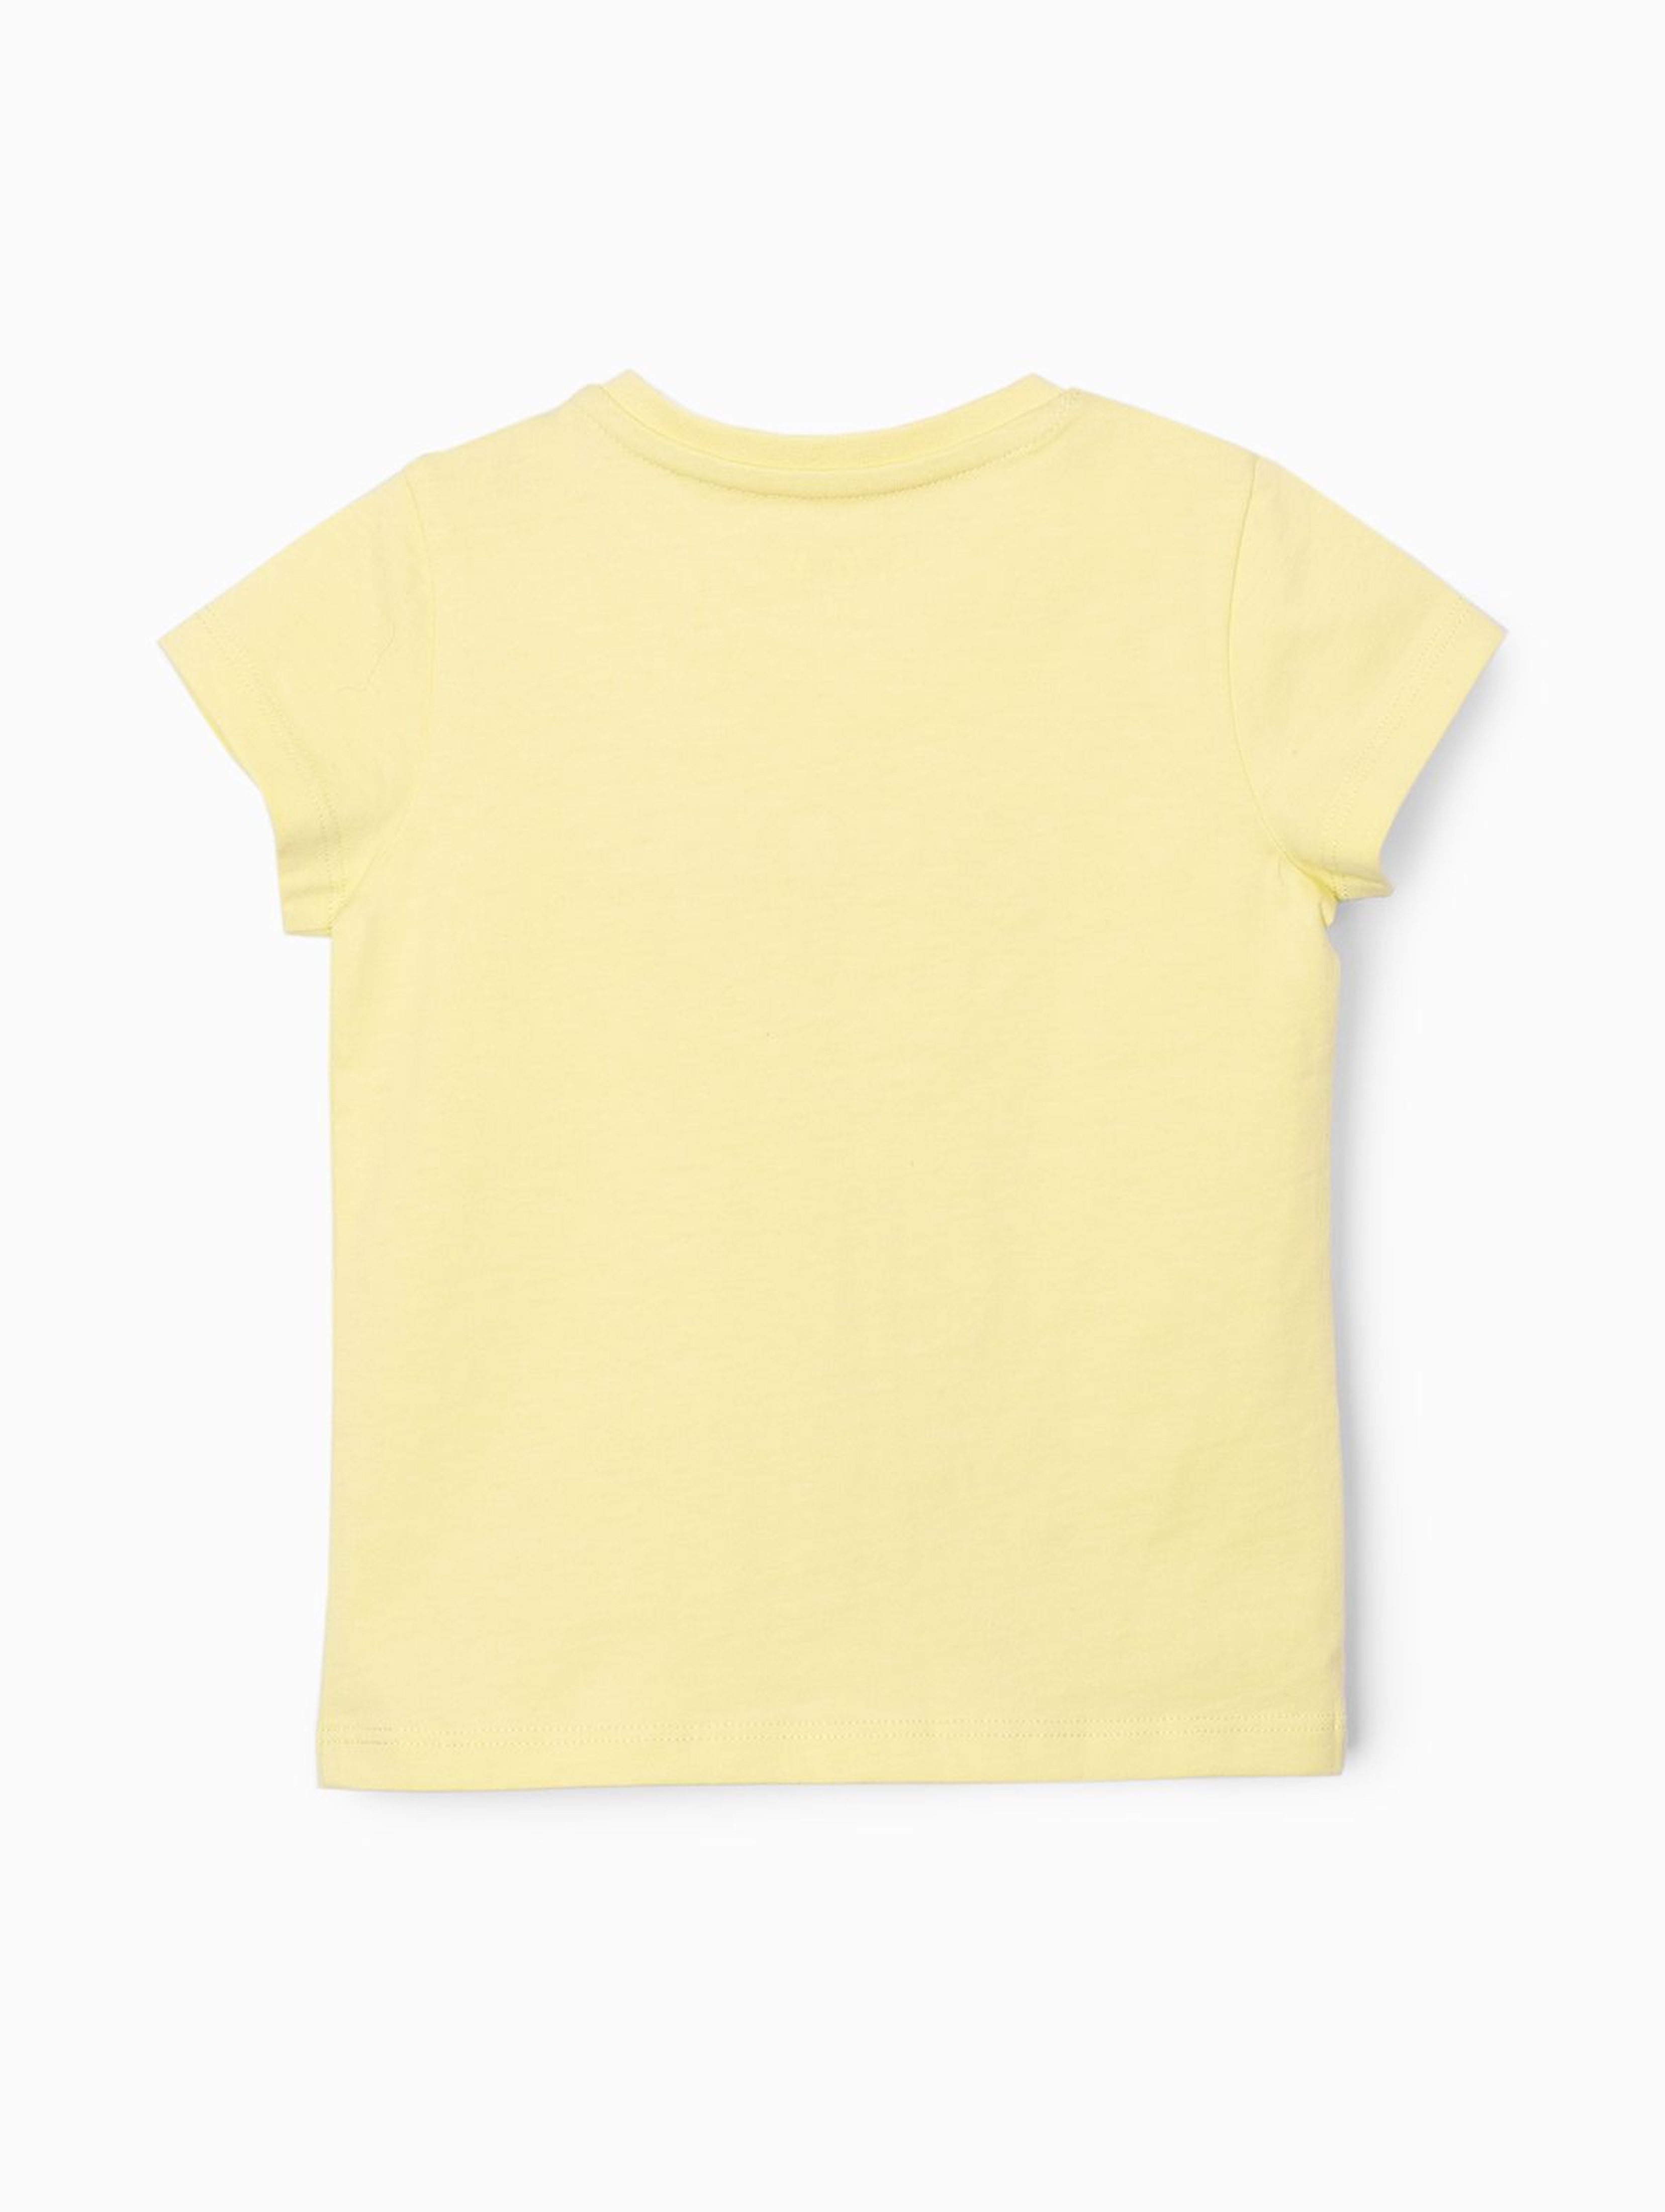 Bluzka dziewczęca z napisem Słodziak - żółta